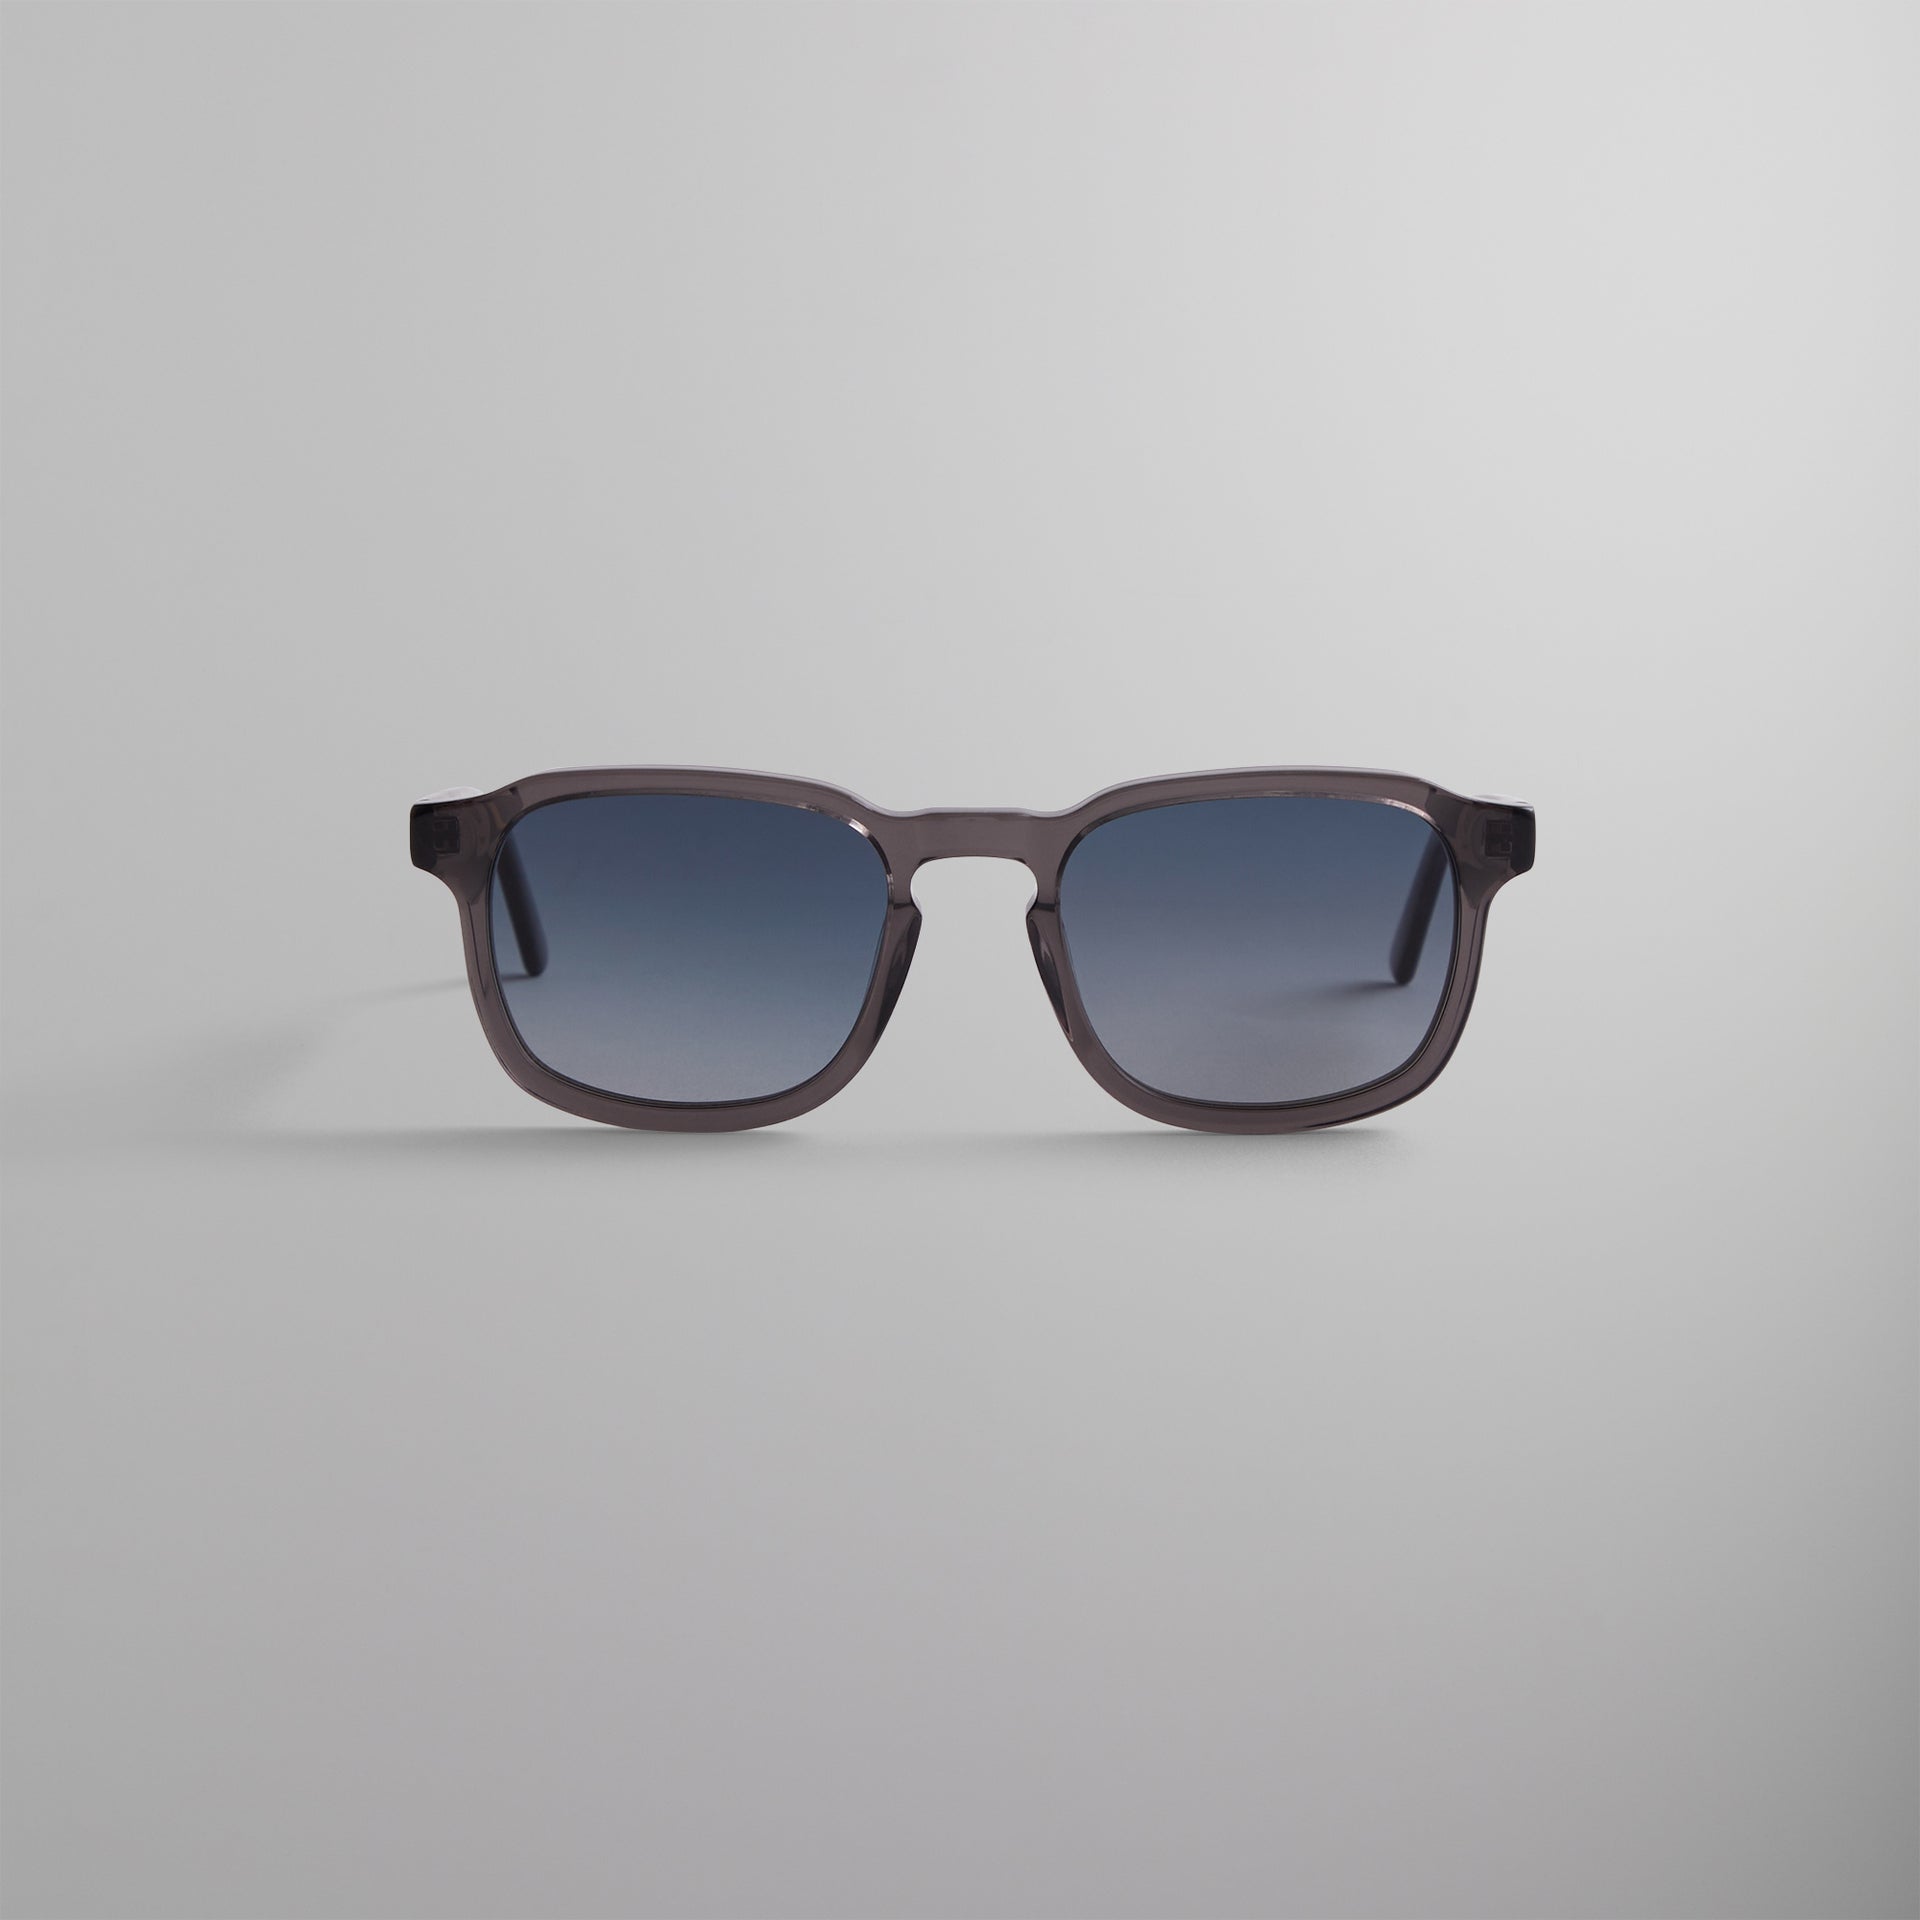 UrlfreezeShops Napeague Sunglasses - Grey Crystal / Blue